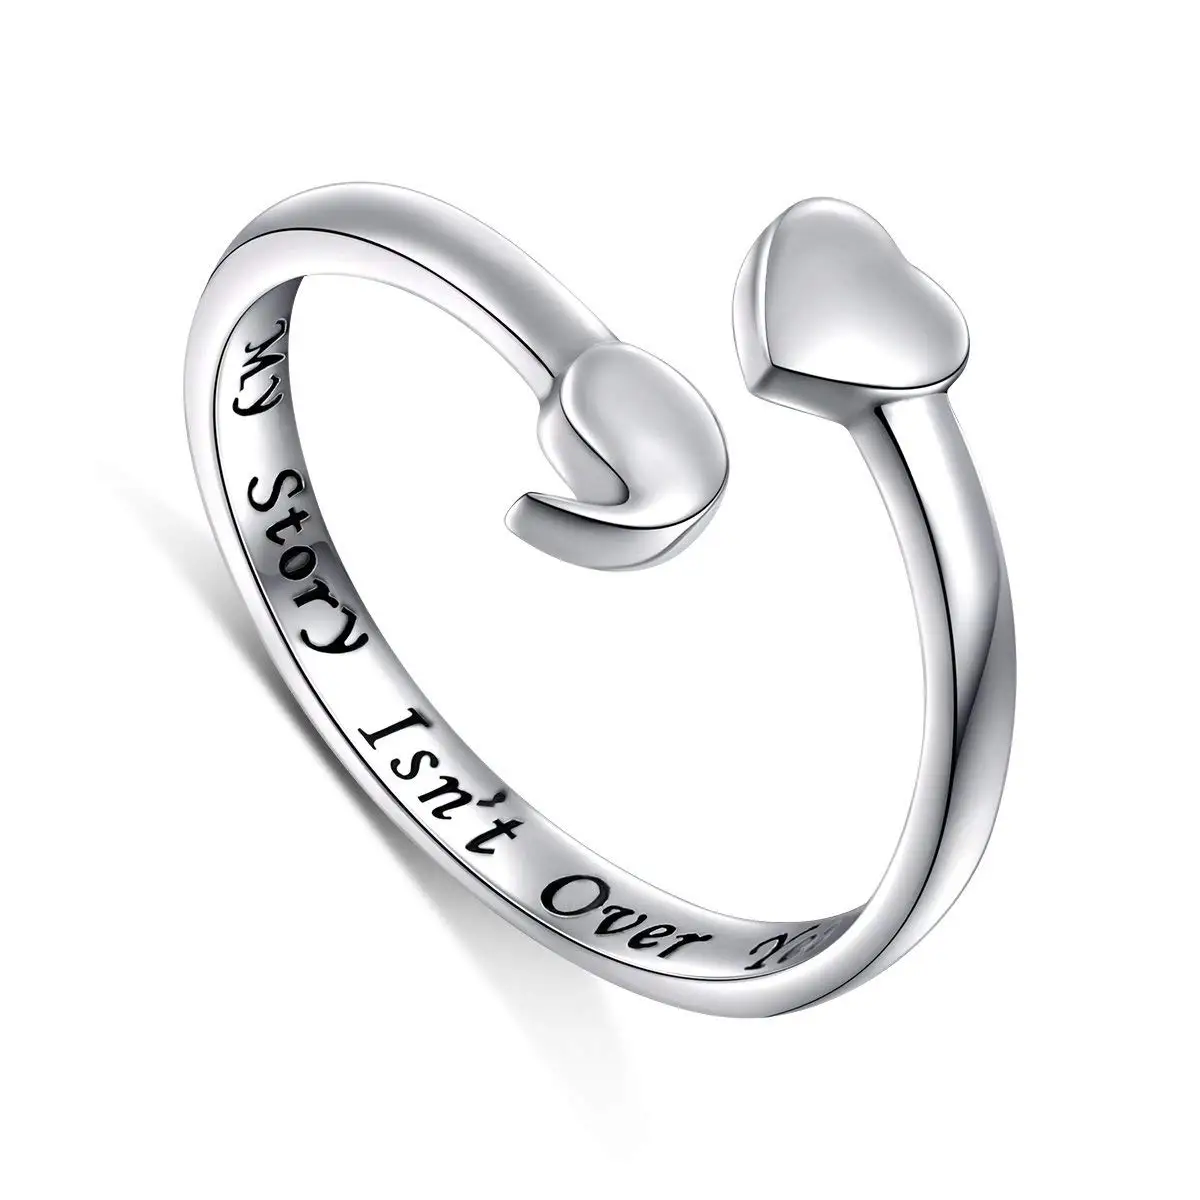 

Paw Print Ring 3mm Qh0160 Women Fashion Metal Round Rings Stainless Steel Ring Woman Surprise Price